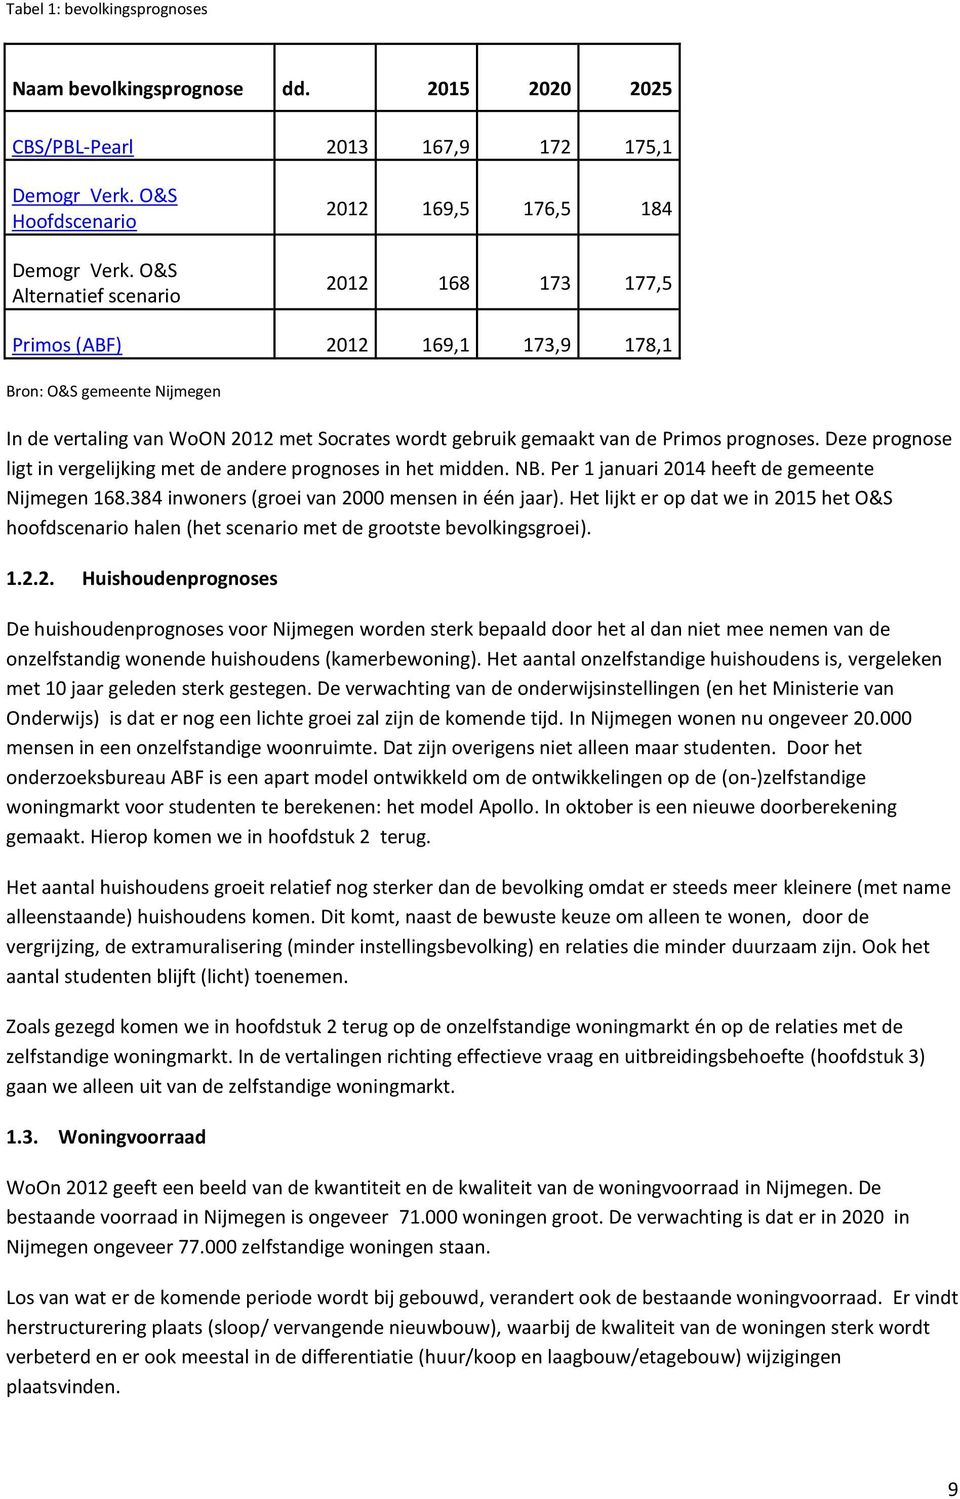 de Primos prognoses. Deze prognose ligt in vergelijking met de andere prognoses in het midden. NB. Per 1 januari 2014 heeft de gemeente Nijmegen 168.384 inwoners (groei van 2000 mensen in één jaar).